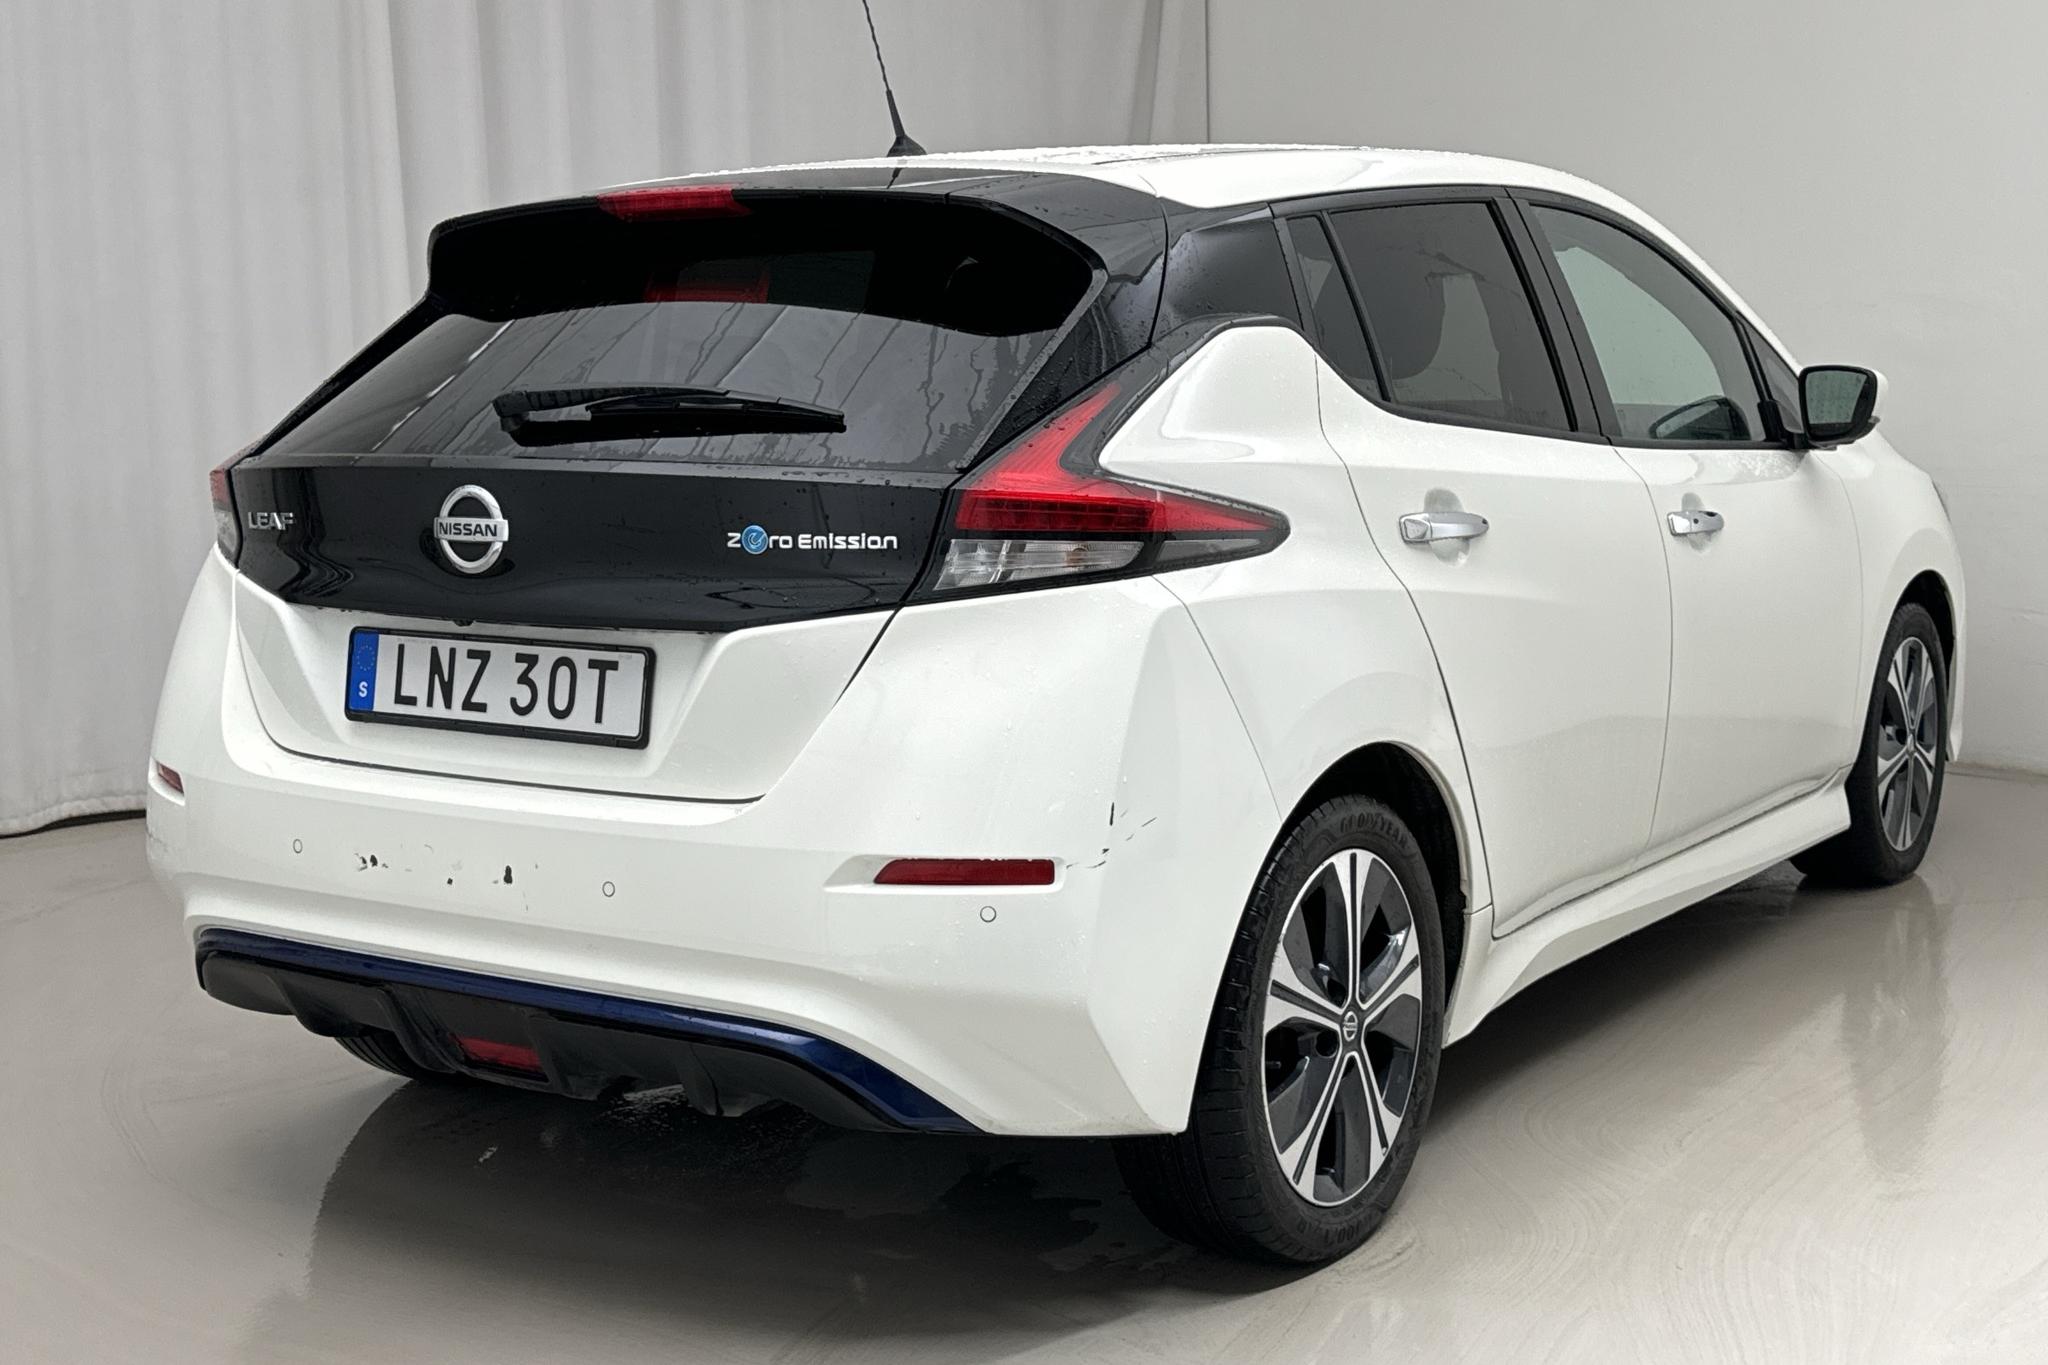 Nissan LEAF 5dr 40 kWh (150hk) - 32 830 km - Automaatne - valge - 2021